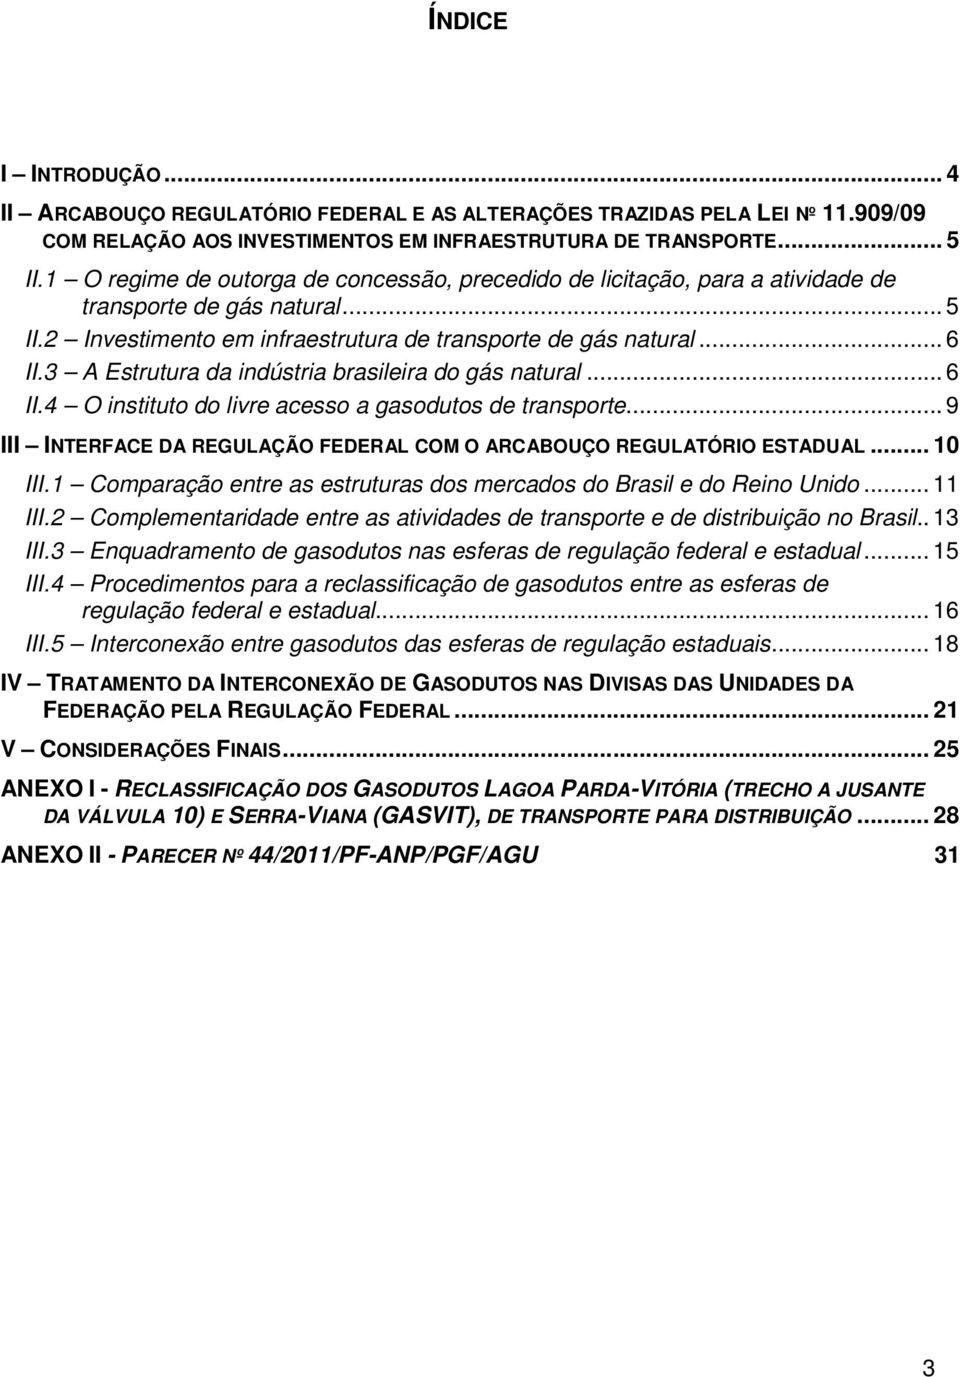 3 A Estrutura da indústria brasileira do gás natural... 6 II.4 O instituto do livre acesso a gasodutos de transporte... 9 III INTERFACE DA REGULAÇÃO FEDERAL COM O ARCABOUÇO REGULATÓRIO ESTADUAL.